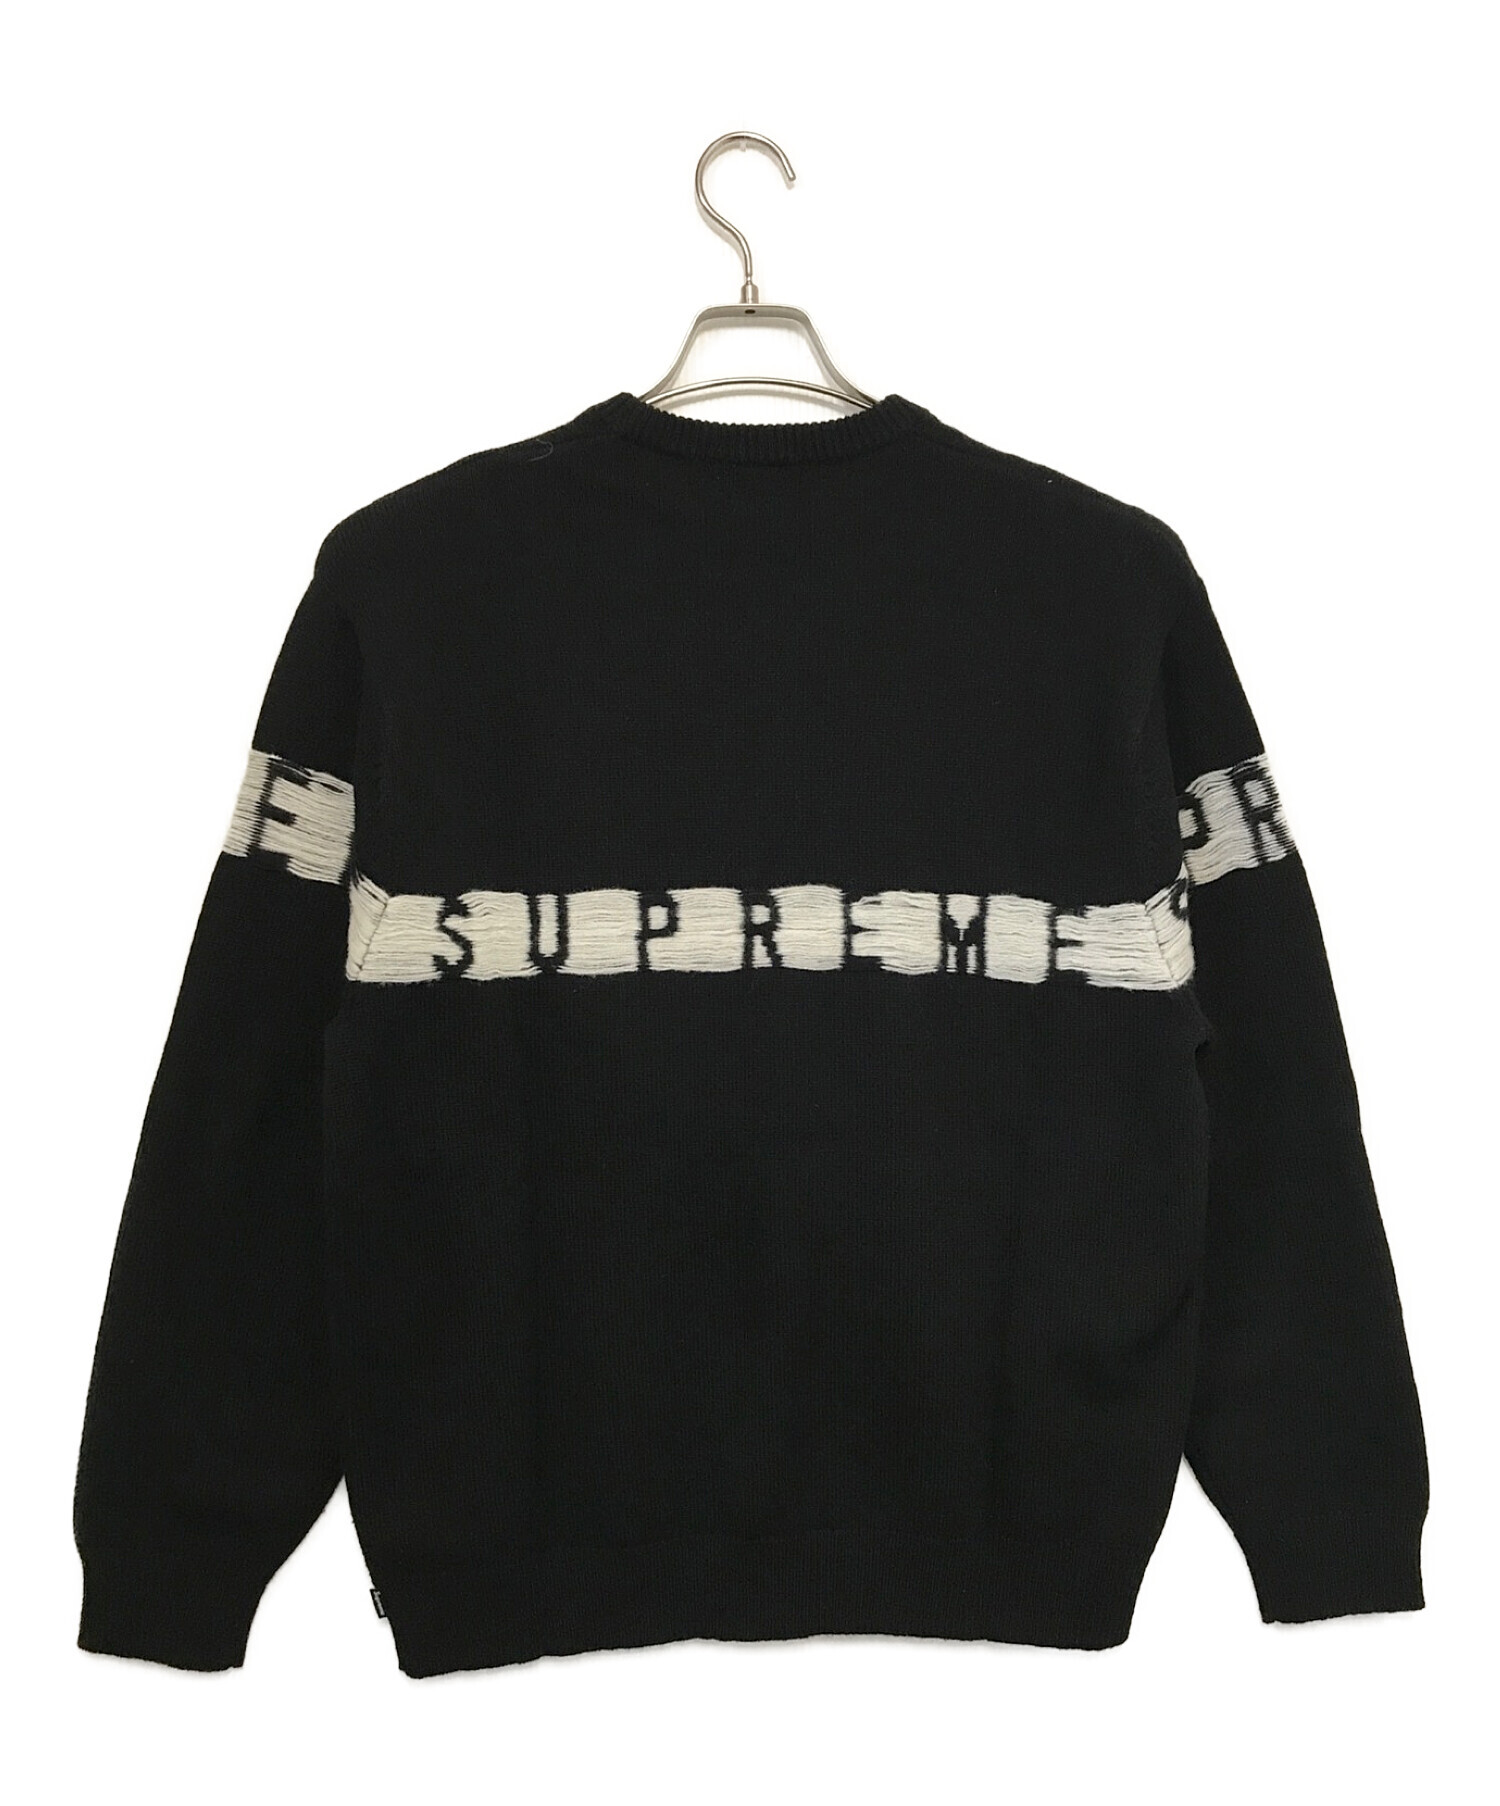 SUPREME (シュプリーム) Inside Out Logo Sweater / インサイド アウト ロゴ セーター ブラック サイズ:M